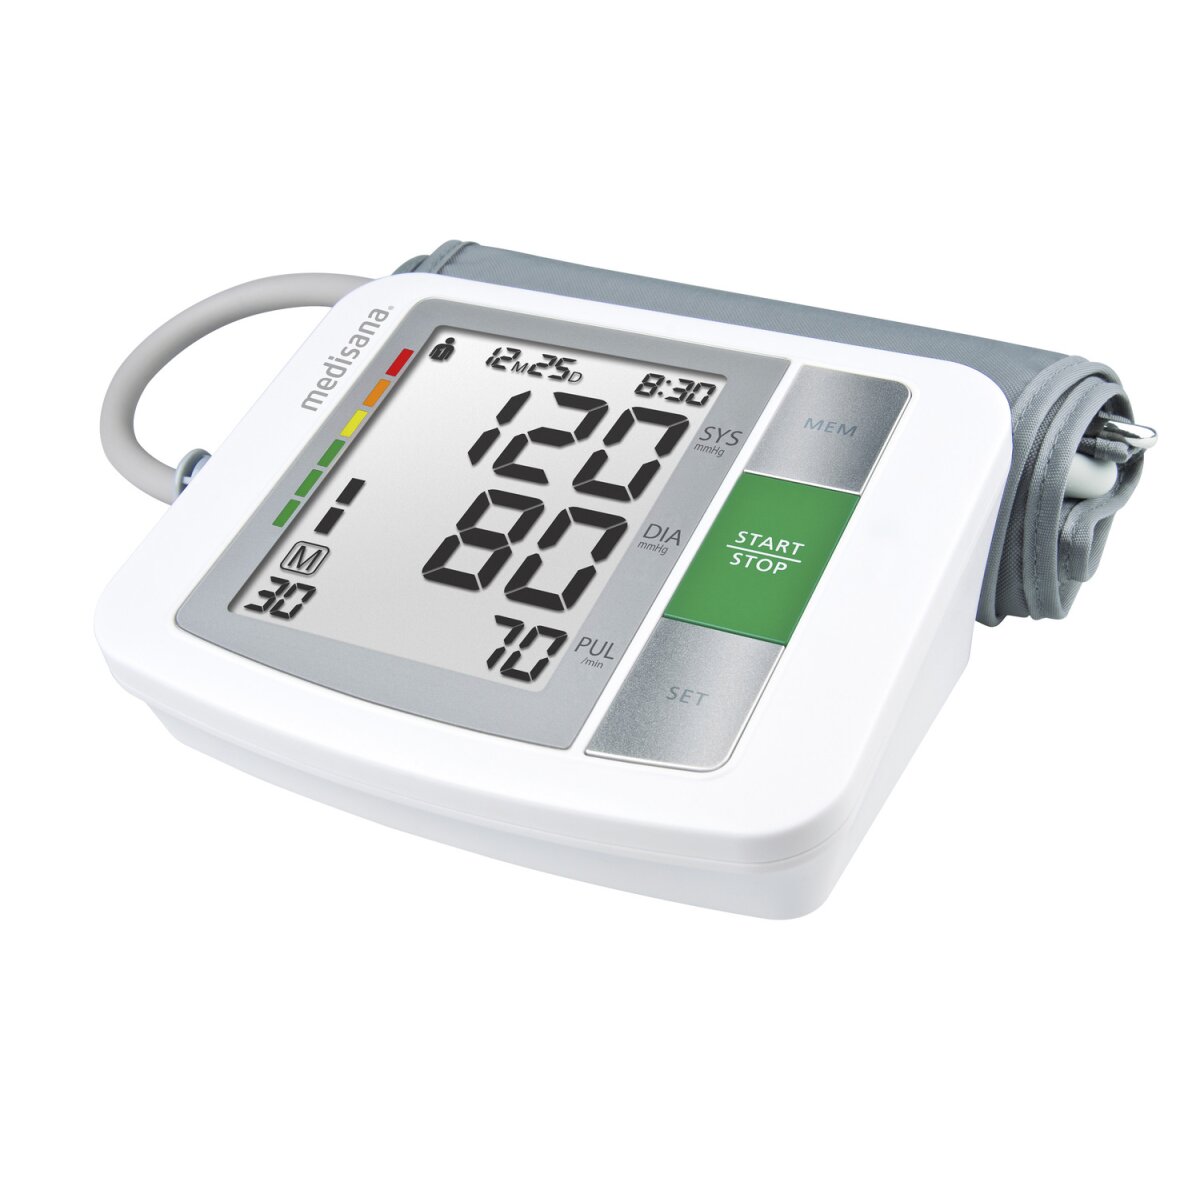 MEDISANA Blutdruckmessgerät BU 510 - B-Ware sehr gut, 15,99 €